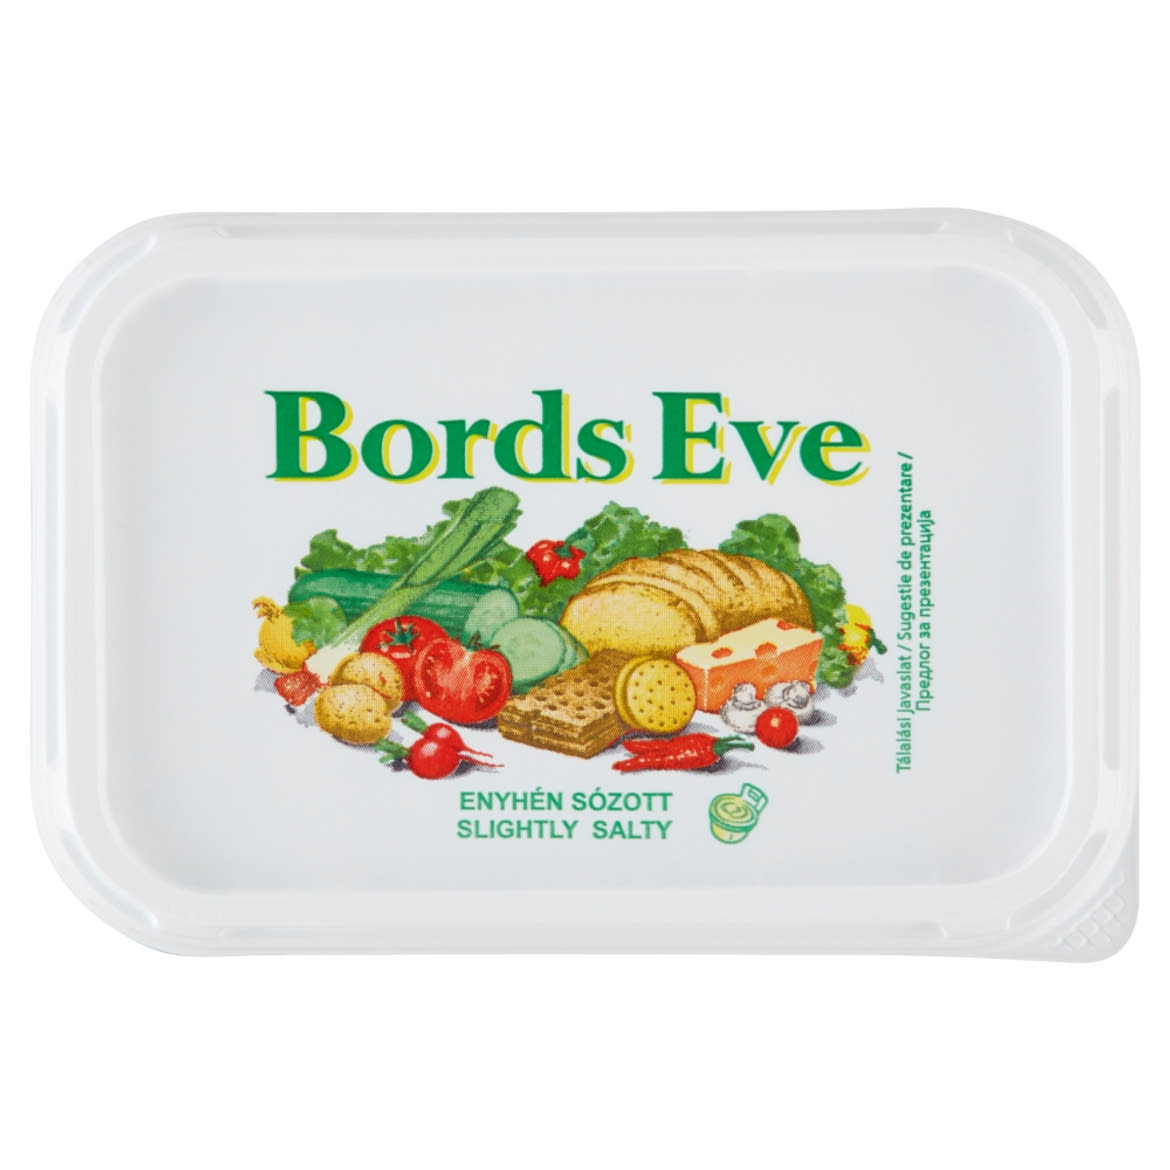 Bords Eve enyhén sózott, csökkentett zsírtartalmú margarin